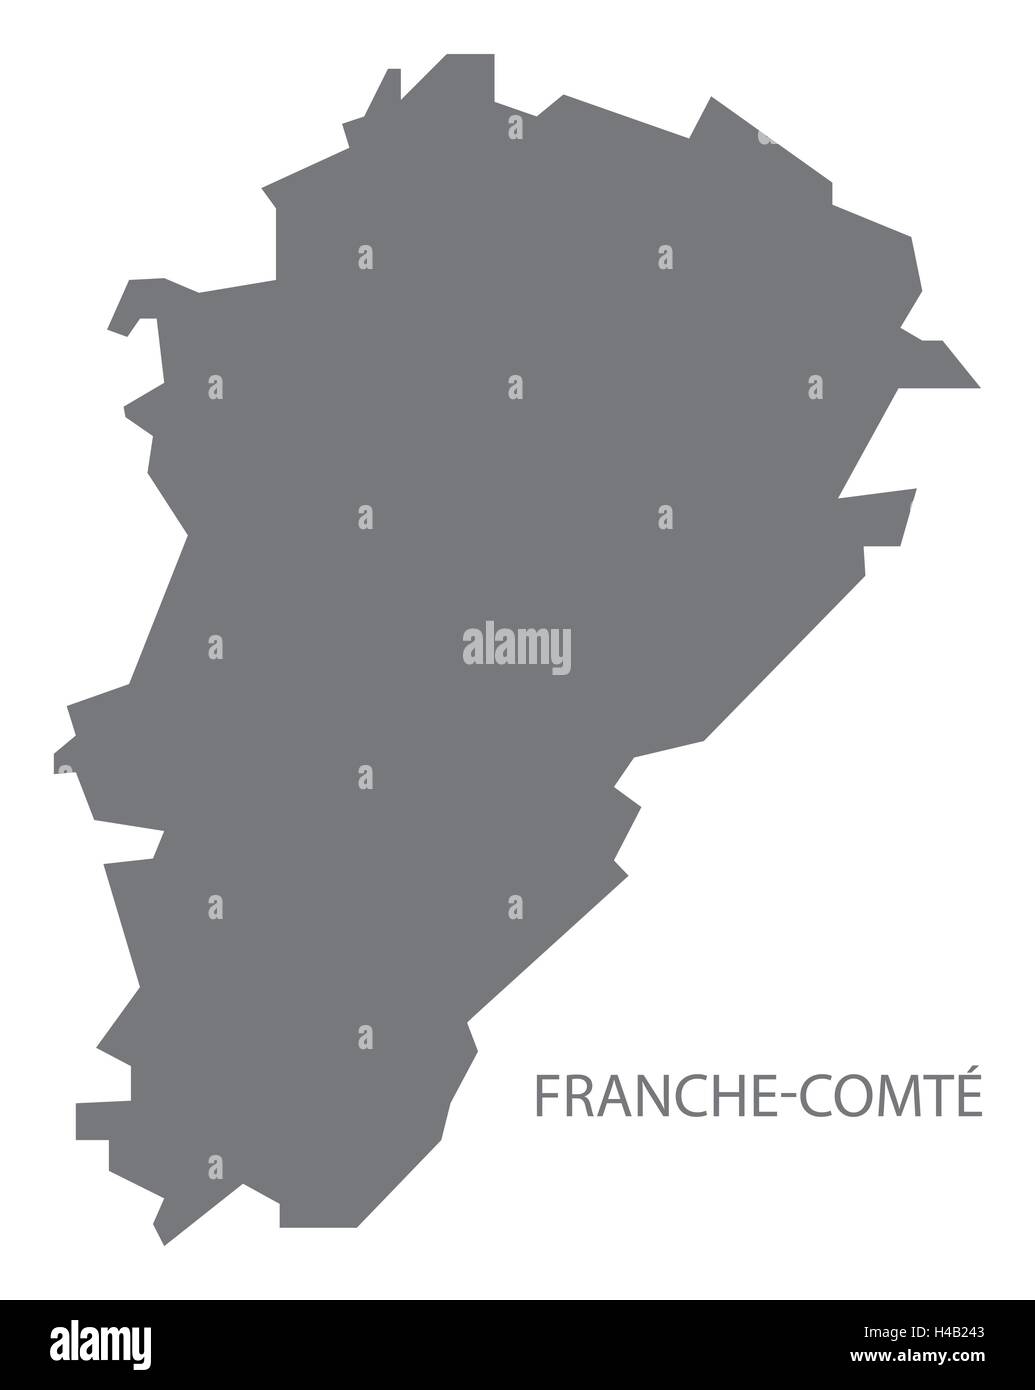 Franche-Comte France Map grey Stock Vector